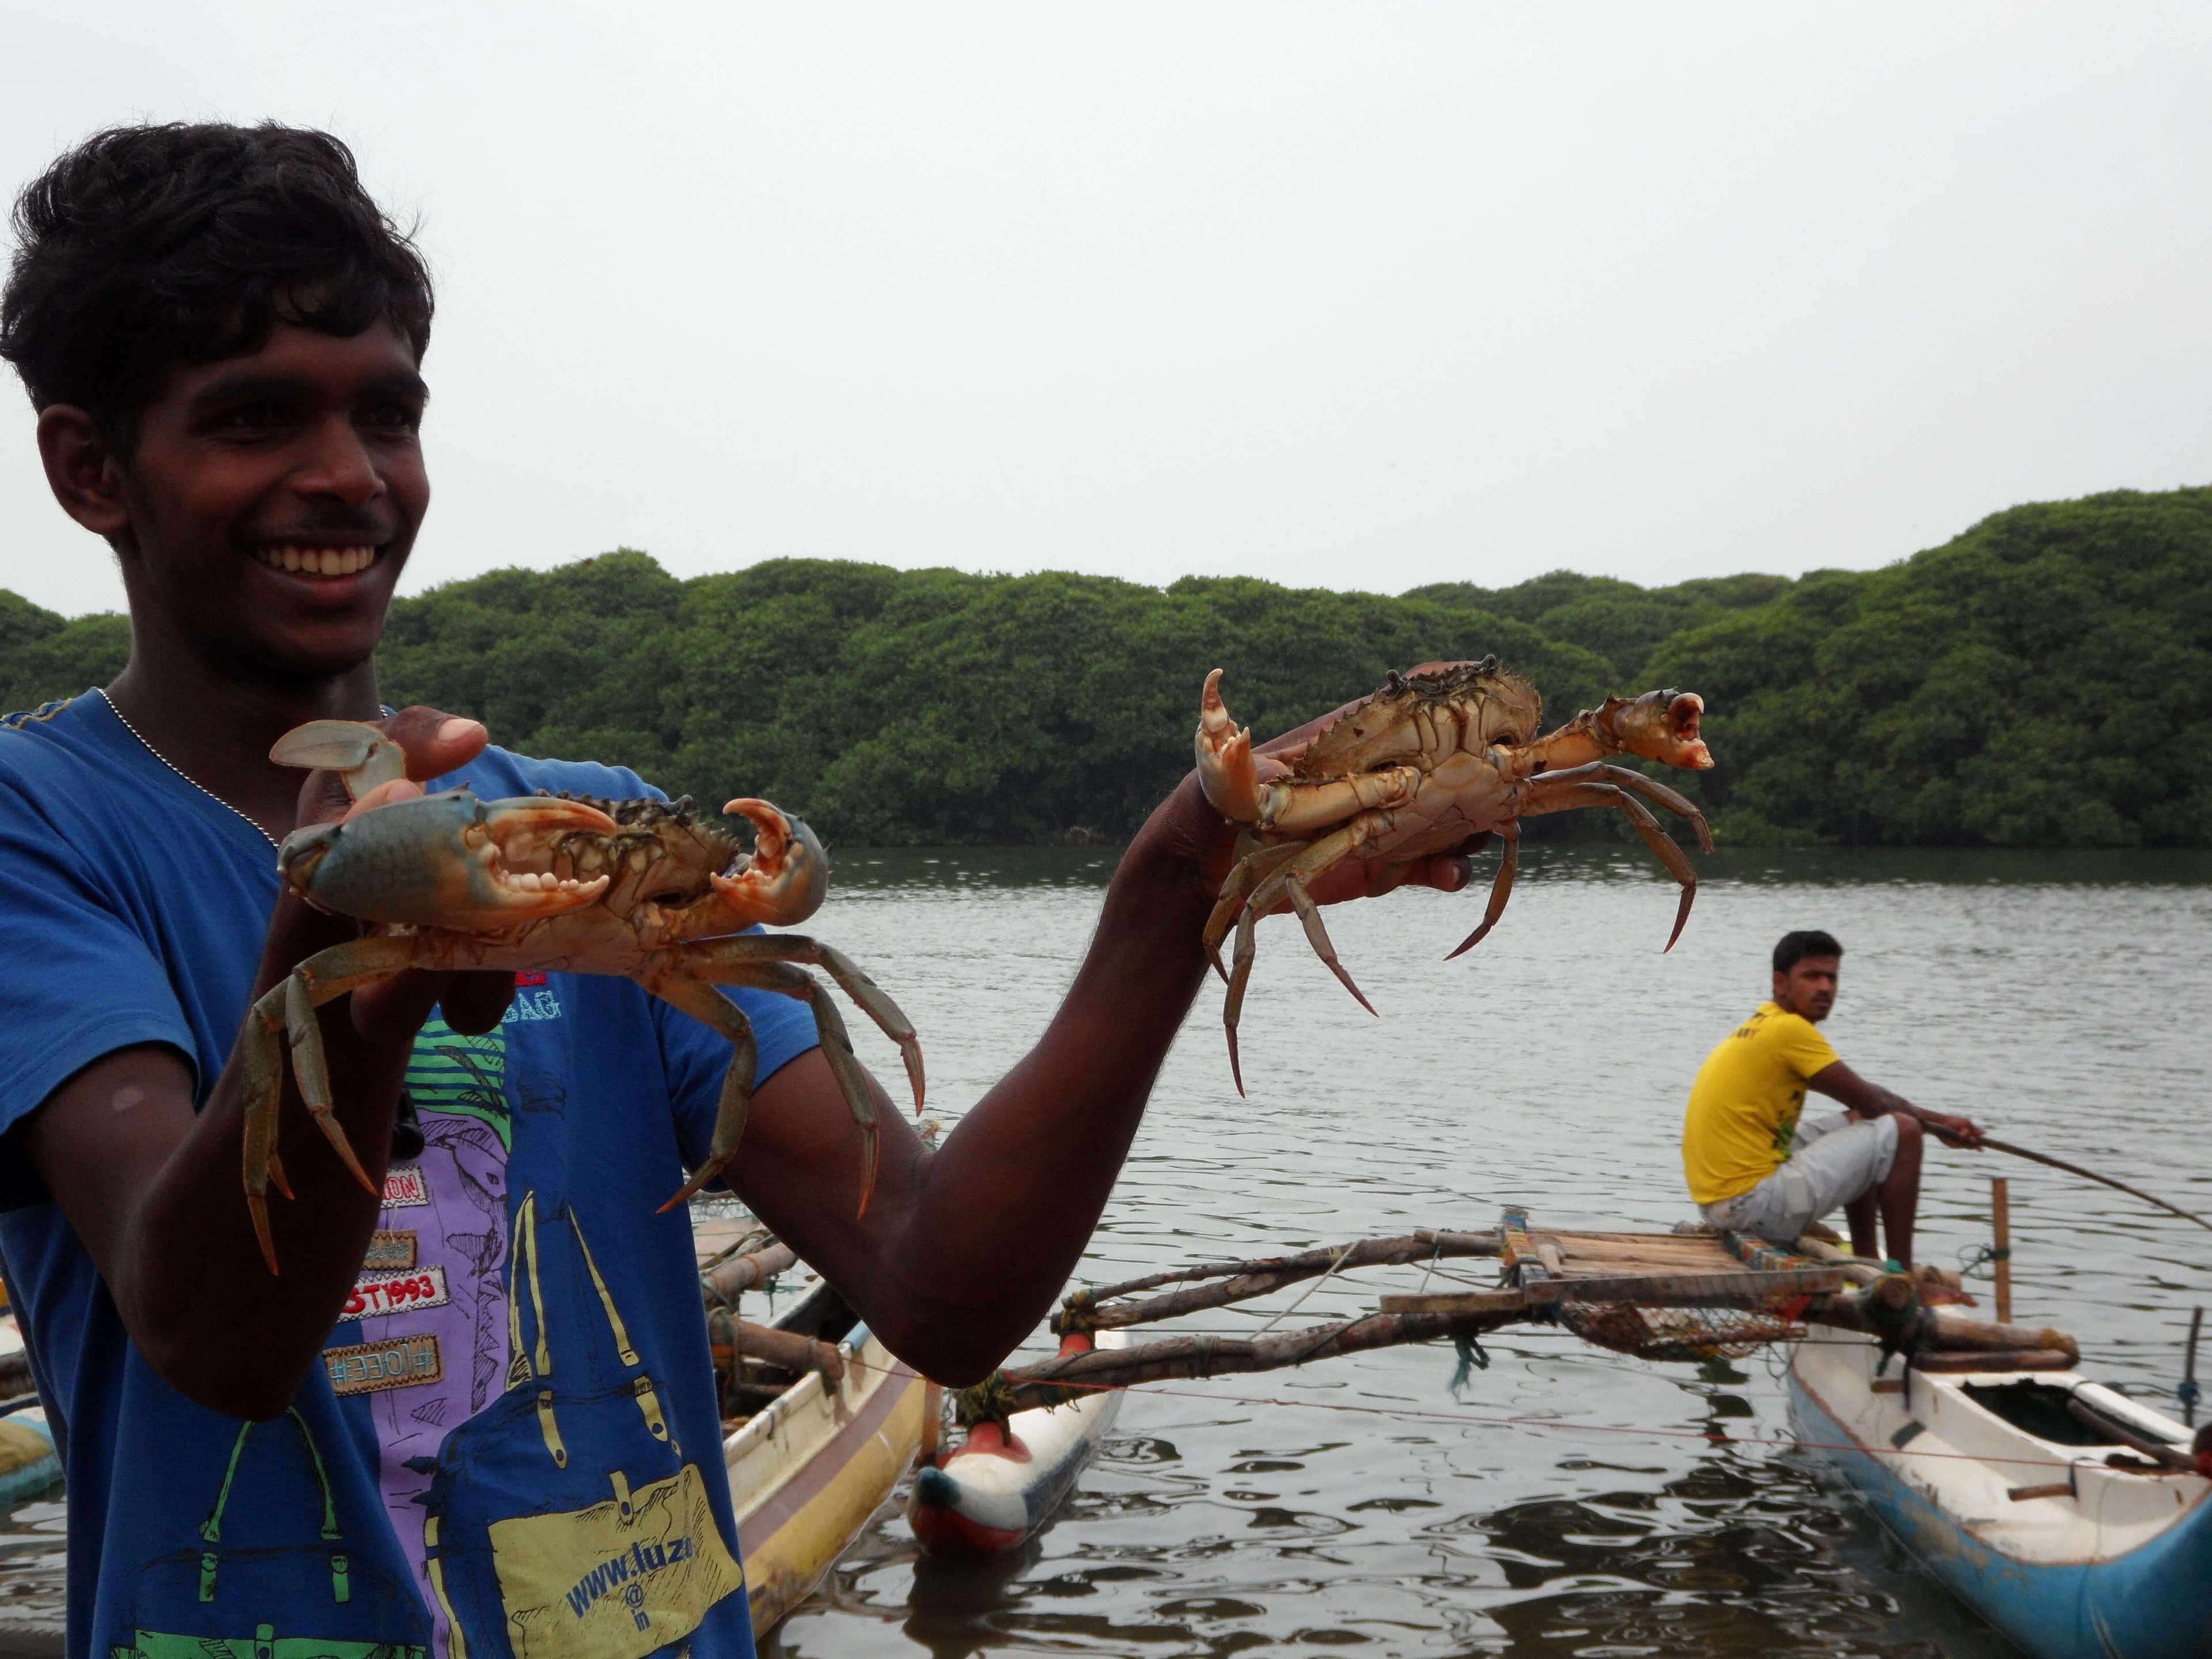 在尼甘布河抓螃蟹的场景传播了多样性